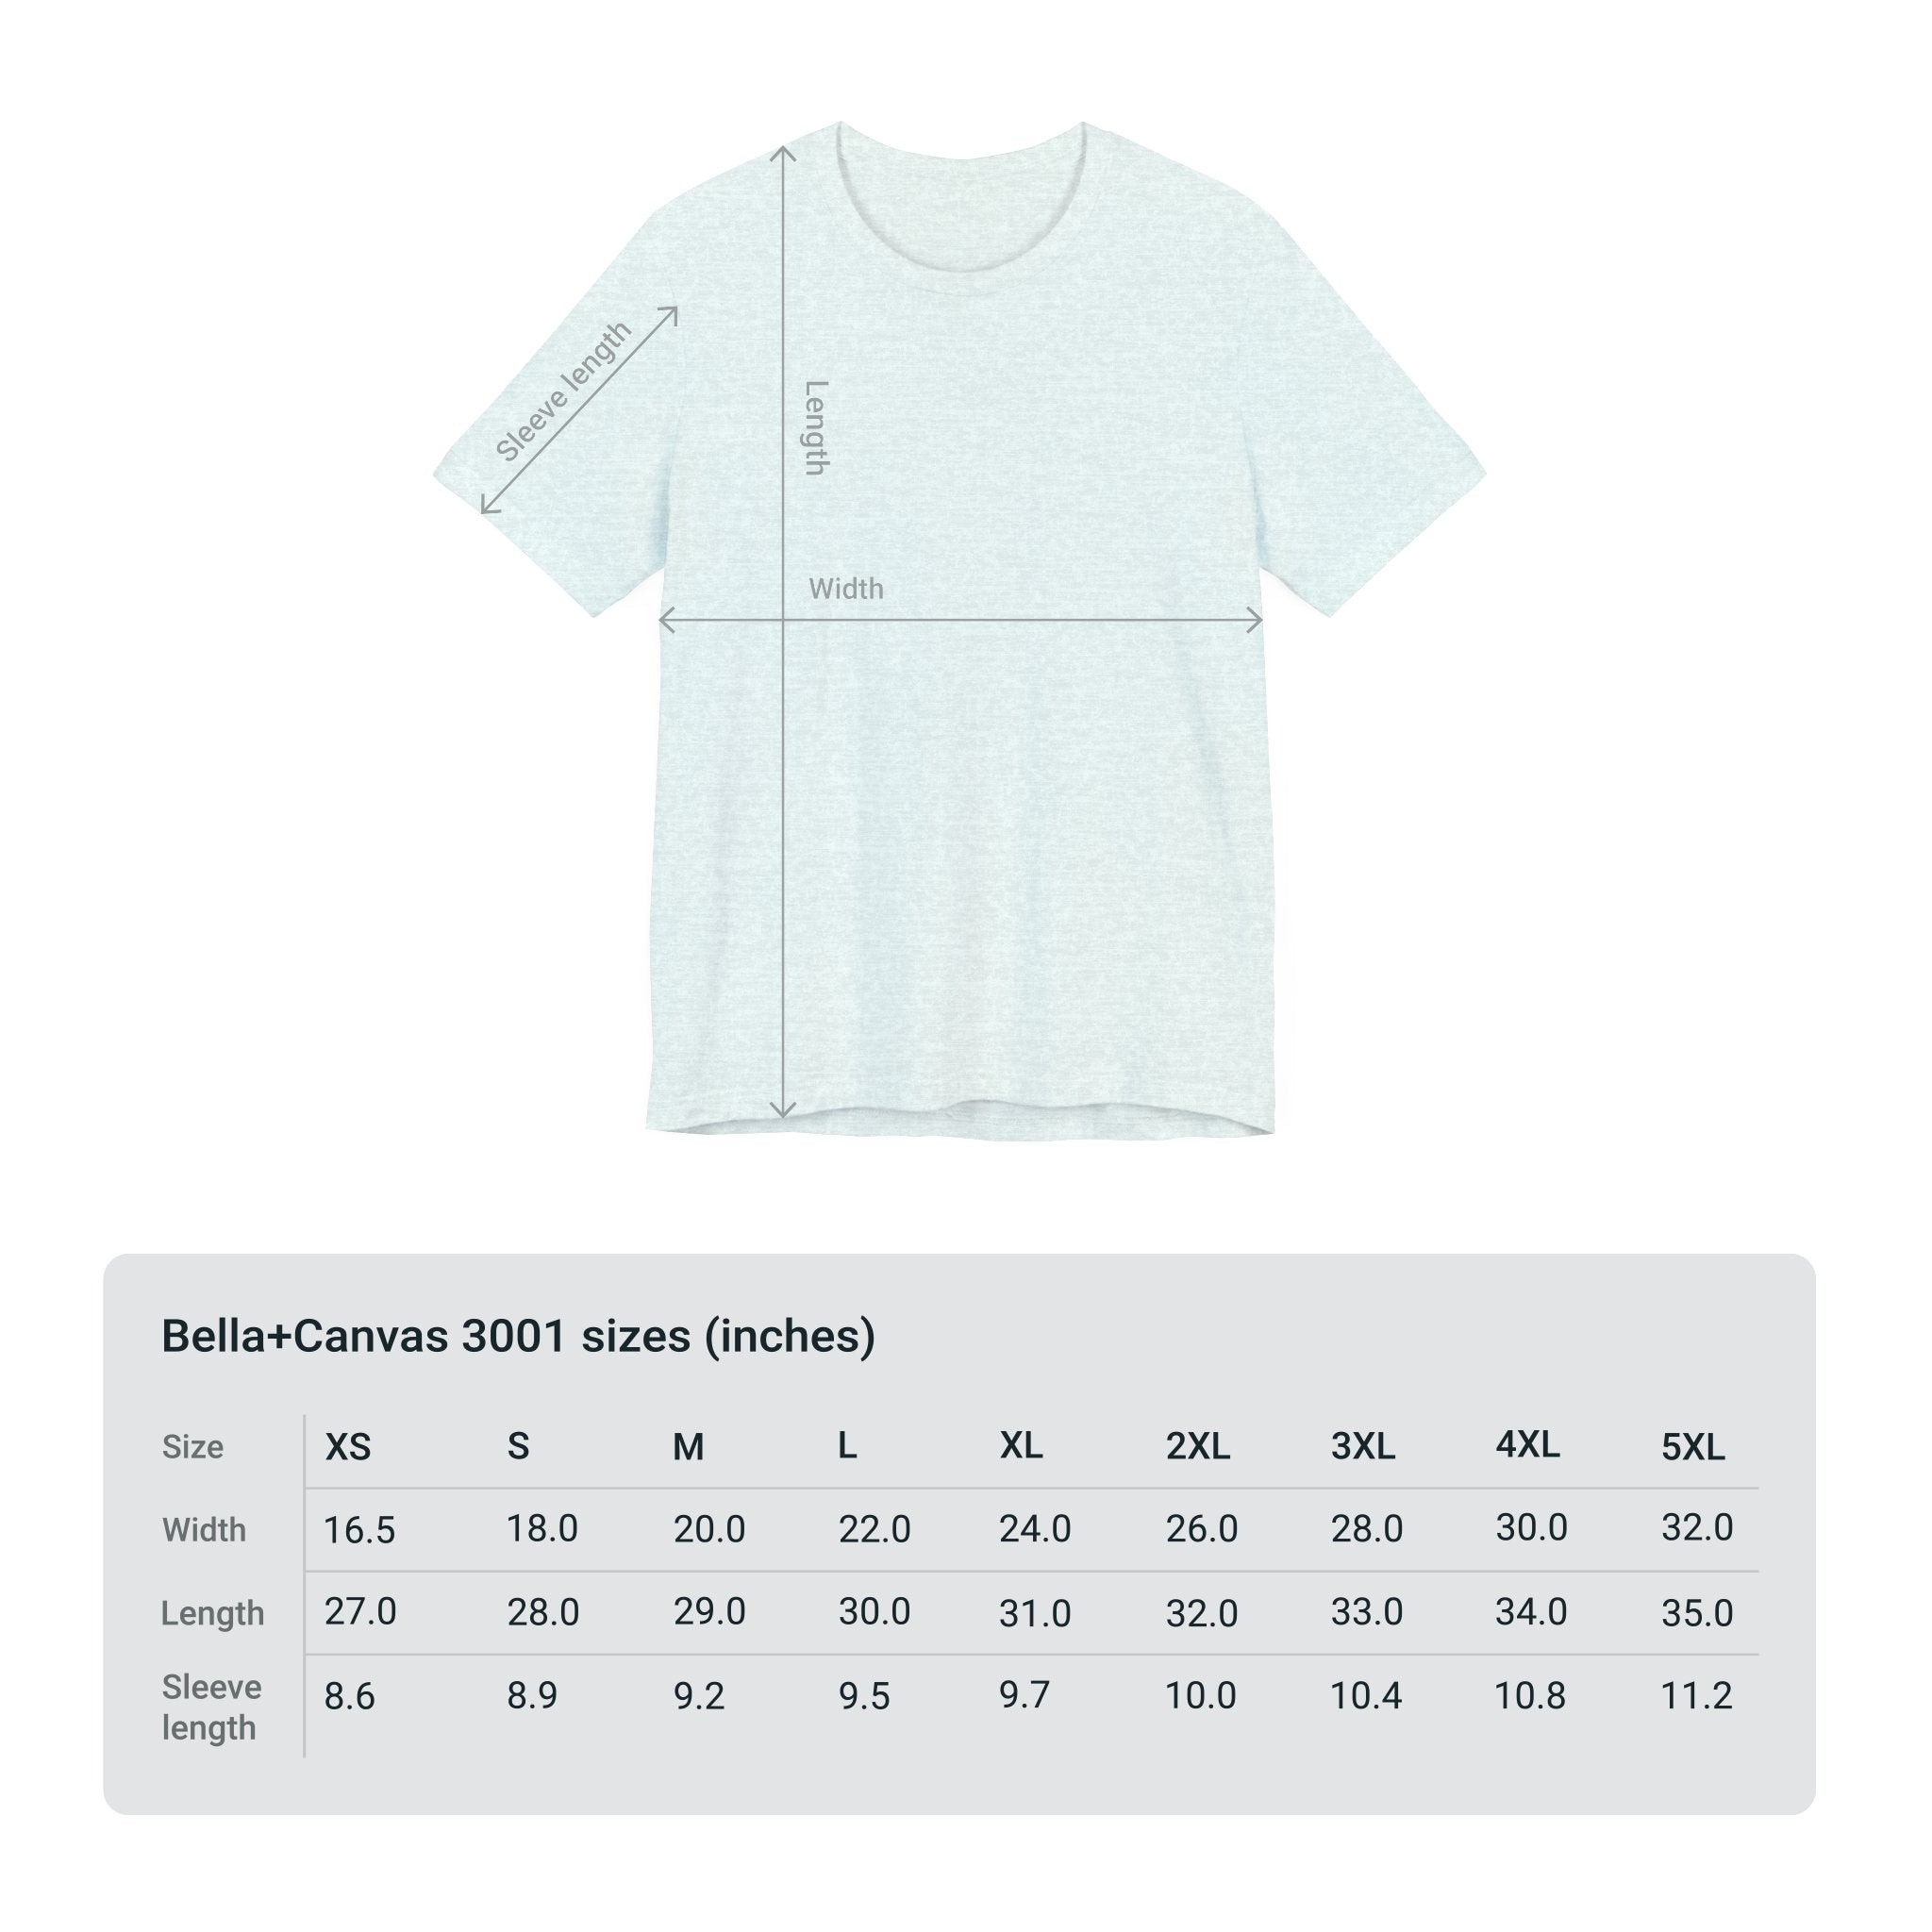 Custom Retro-a-go-go Series Stick'em Up Unisex Jersey Short Sleeve T-Shirt - POPvault - 90751372319543972152